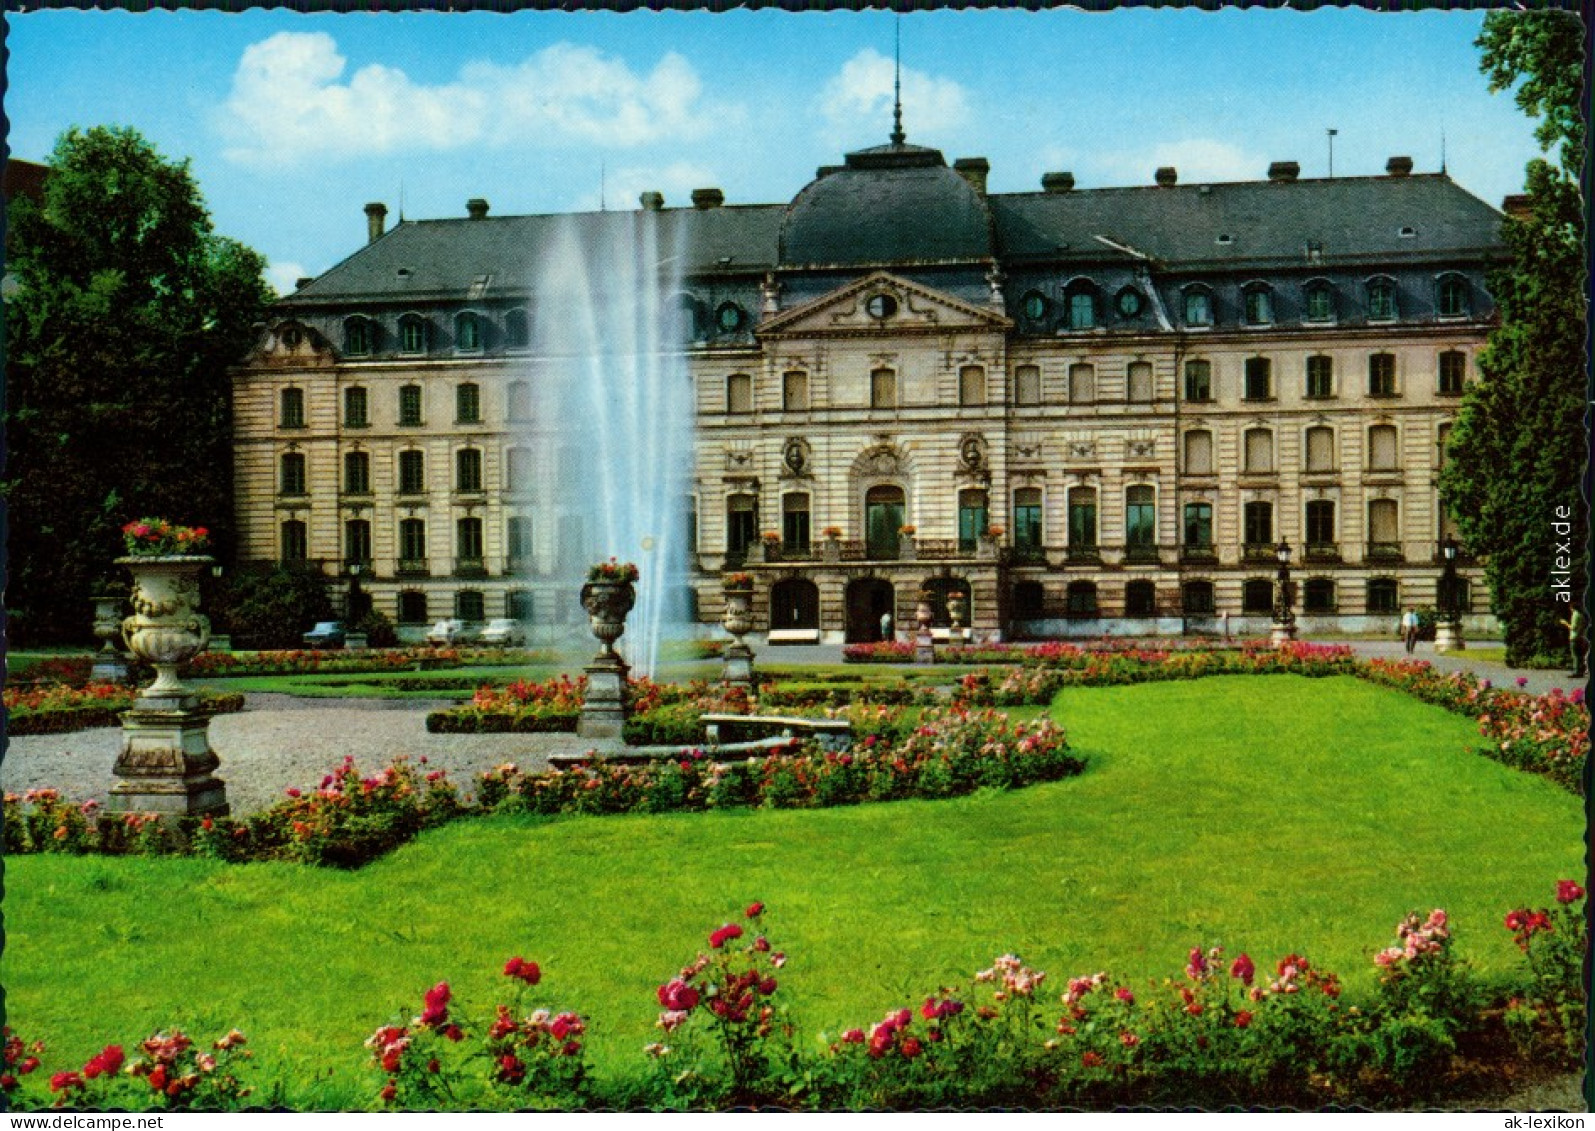 Ansichtskarte Donaueschingen Schloss Mit Springbrunnen 1978 - Donaueschingen